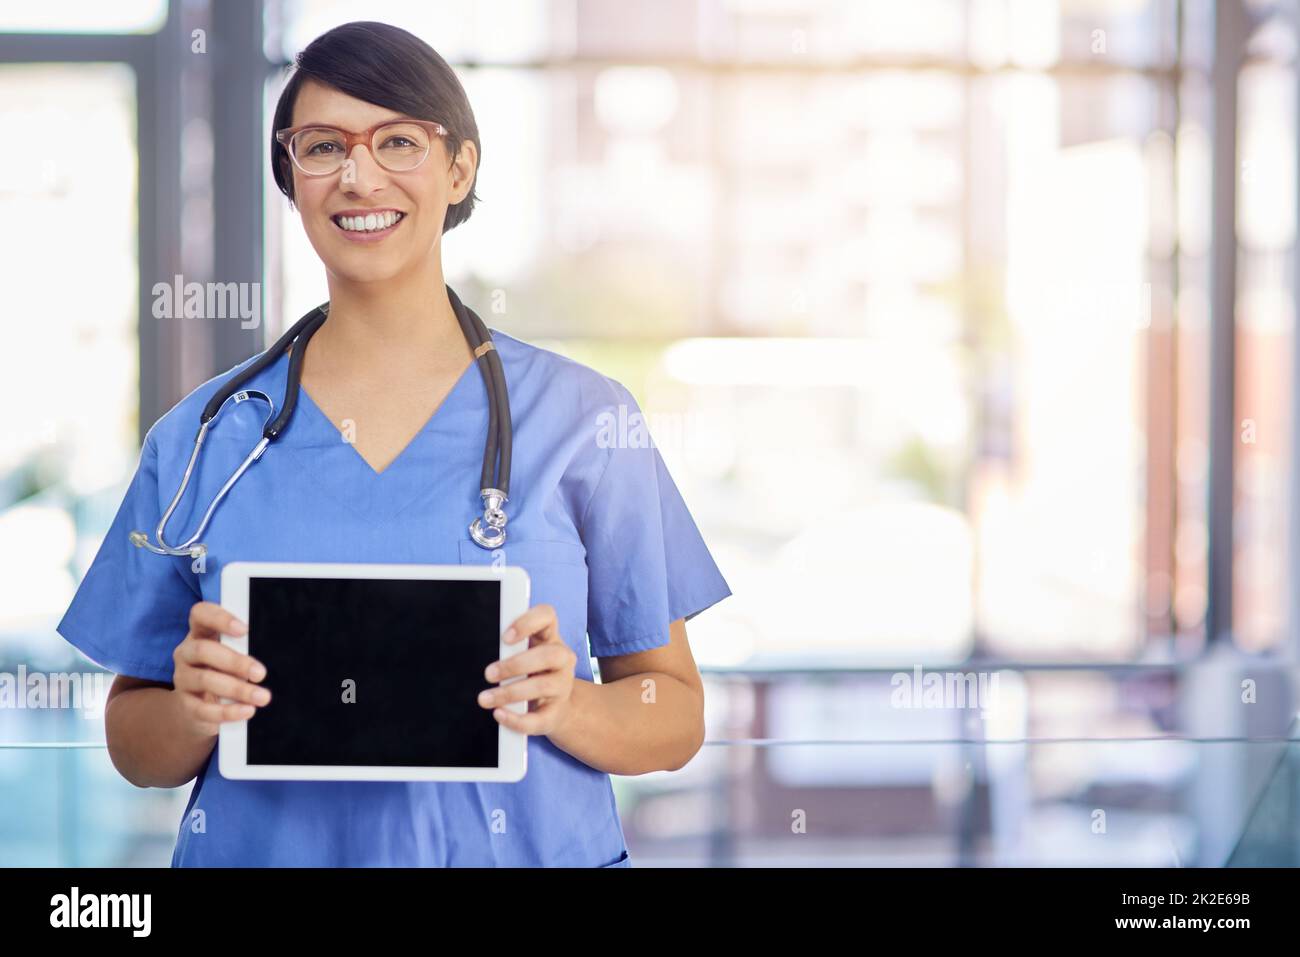 Utilizzare tecnologie all'avanguardia per migliorare l'assistenza sanitaria. Ritratto di un giovane medico che tiene in mano un tablet digitale. Foto Stock